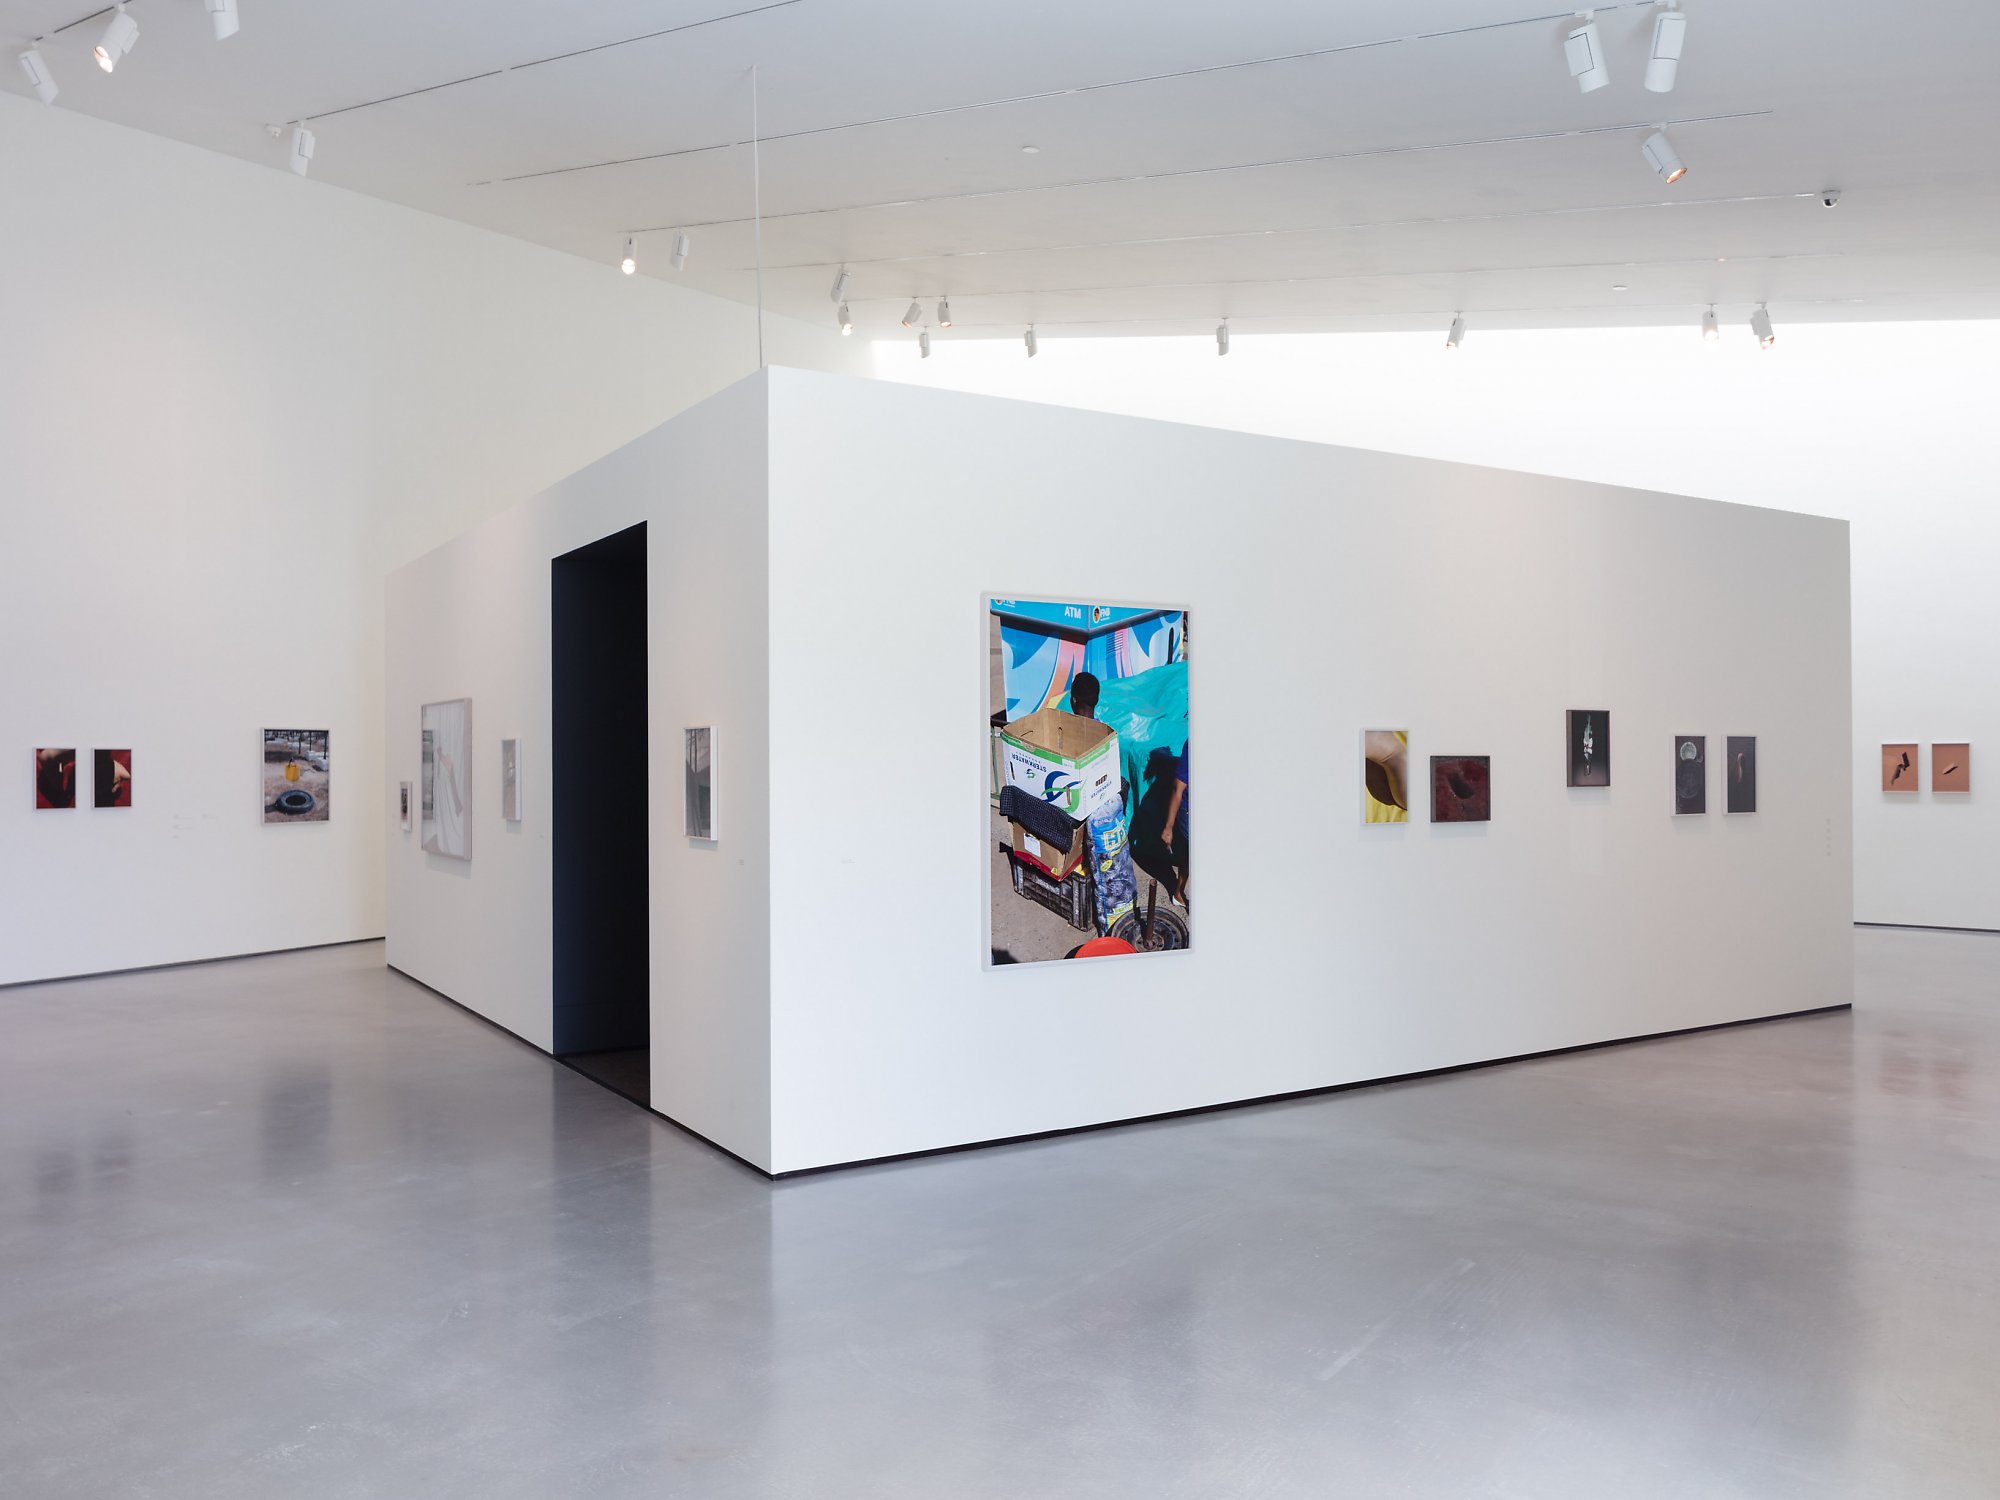 Viviane Sassen: Hot Mirror exhibition at The Hepworth Wakefield